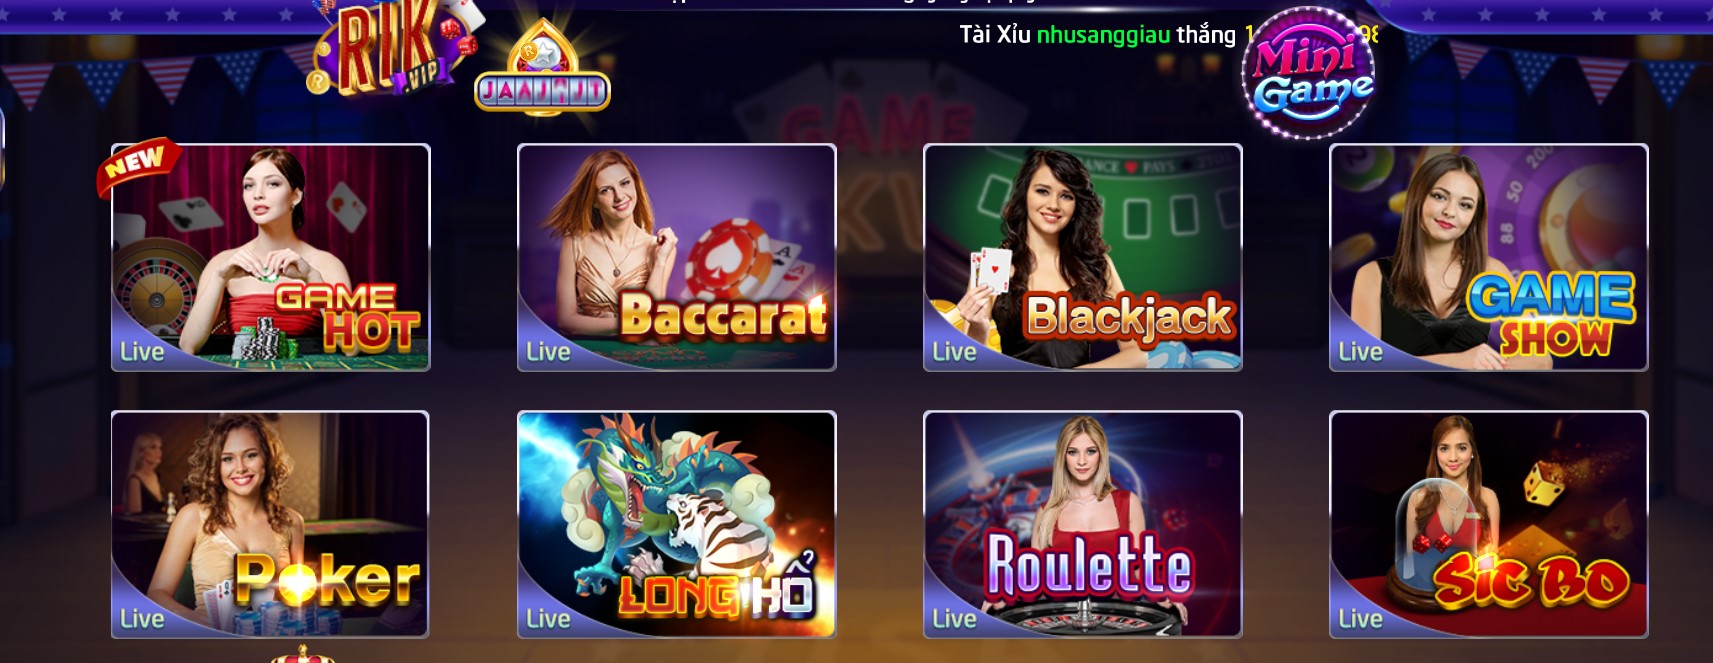 Hệ thống game hấp dẫn trên Live Casino Rikvip